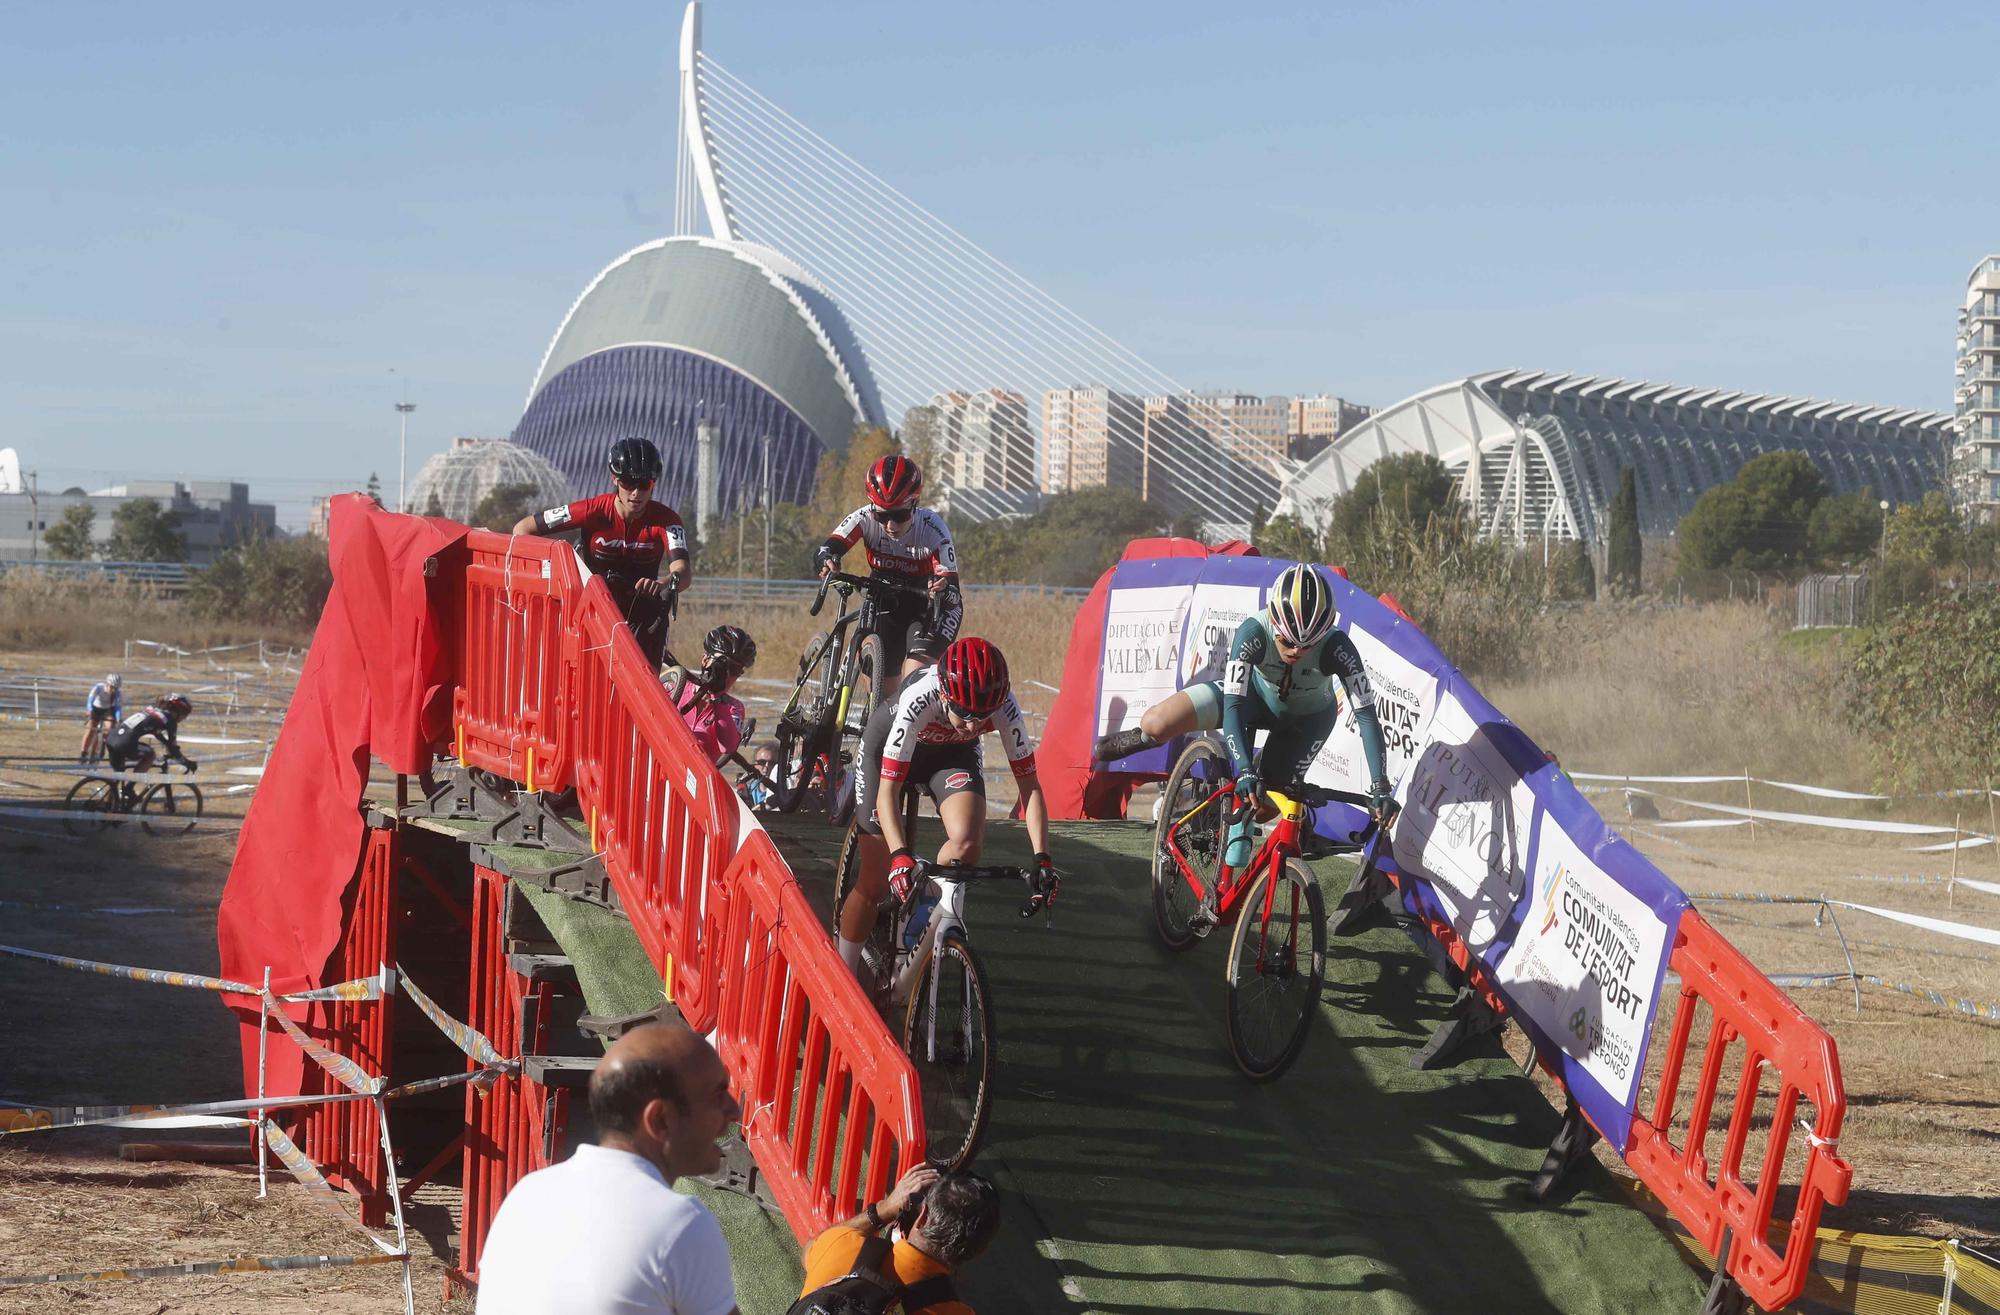 Ciclocross Ciudad de Valencia